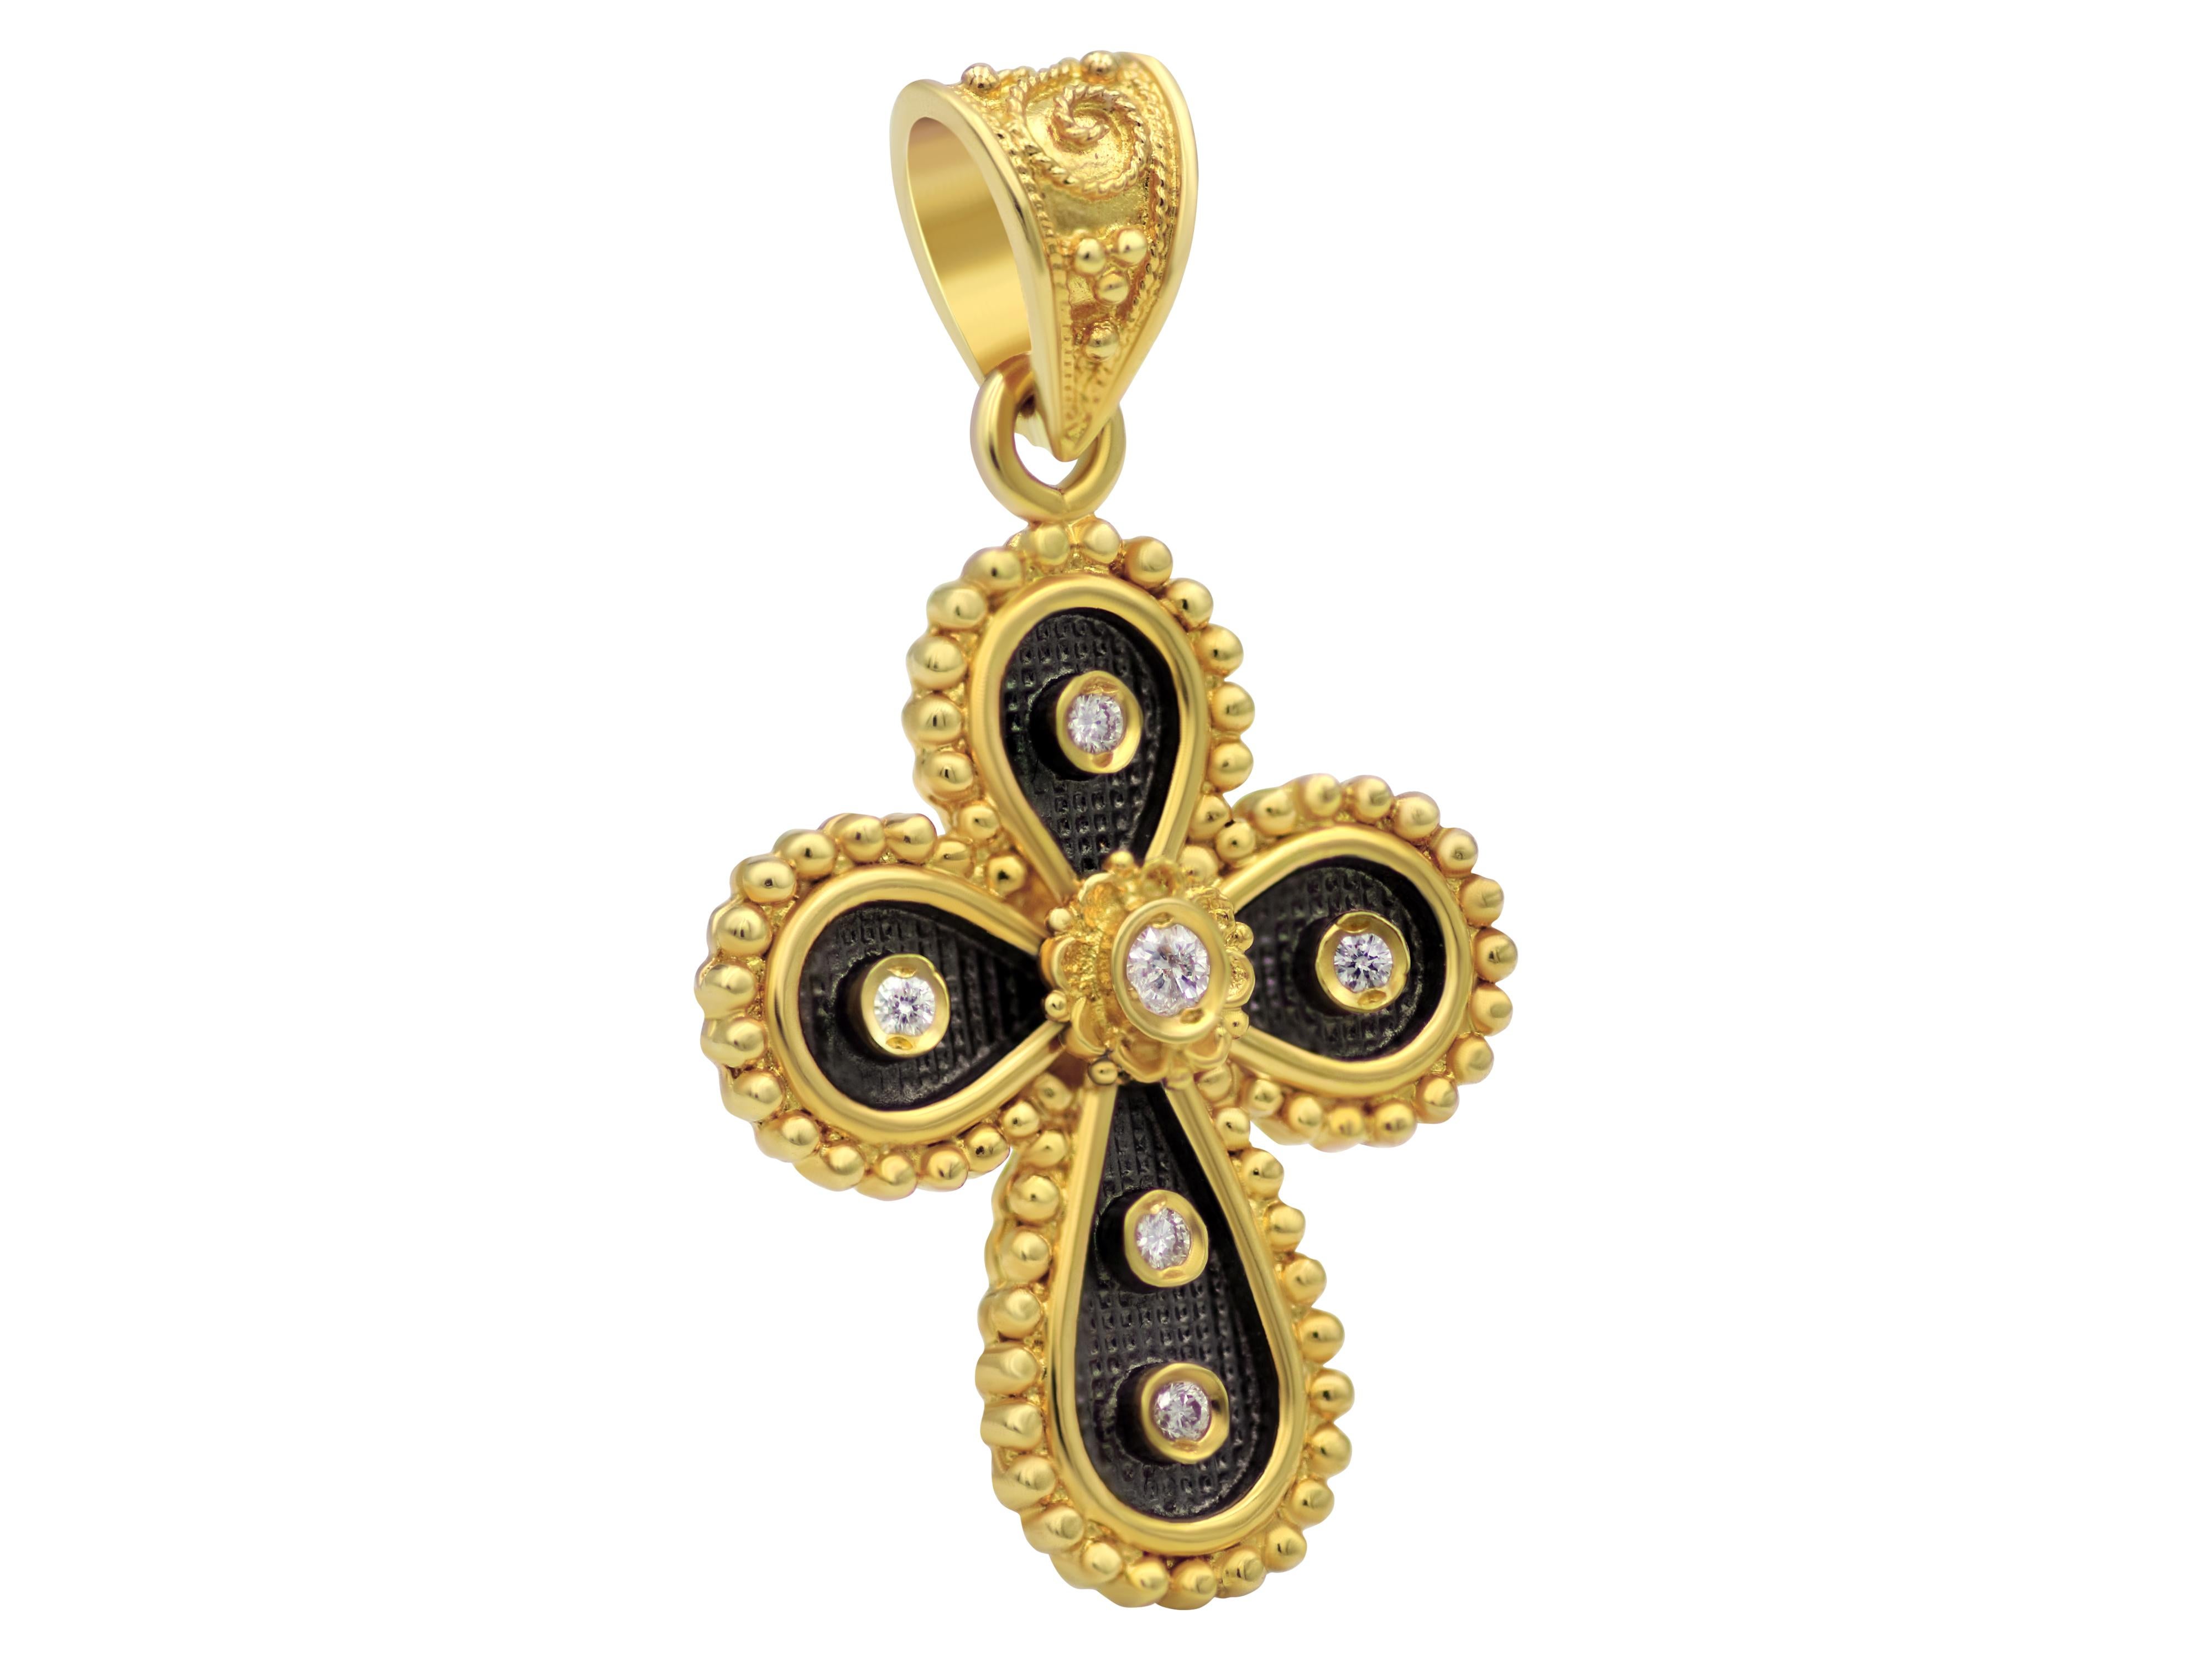 Croix byzantine en or jaune massif 18 carats et diamants taille brillant 0,20 carats. Il a une taille douce, un bel encadrement de perles de granulation plus grandes dans un fond de platine noire créant une présence dynamique malgré sa taille.